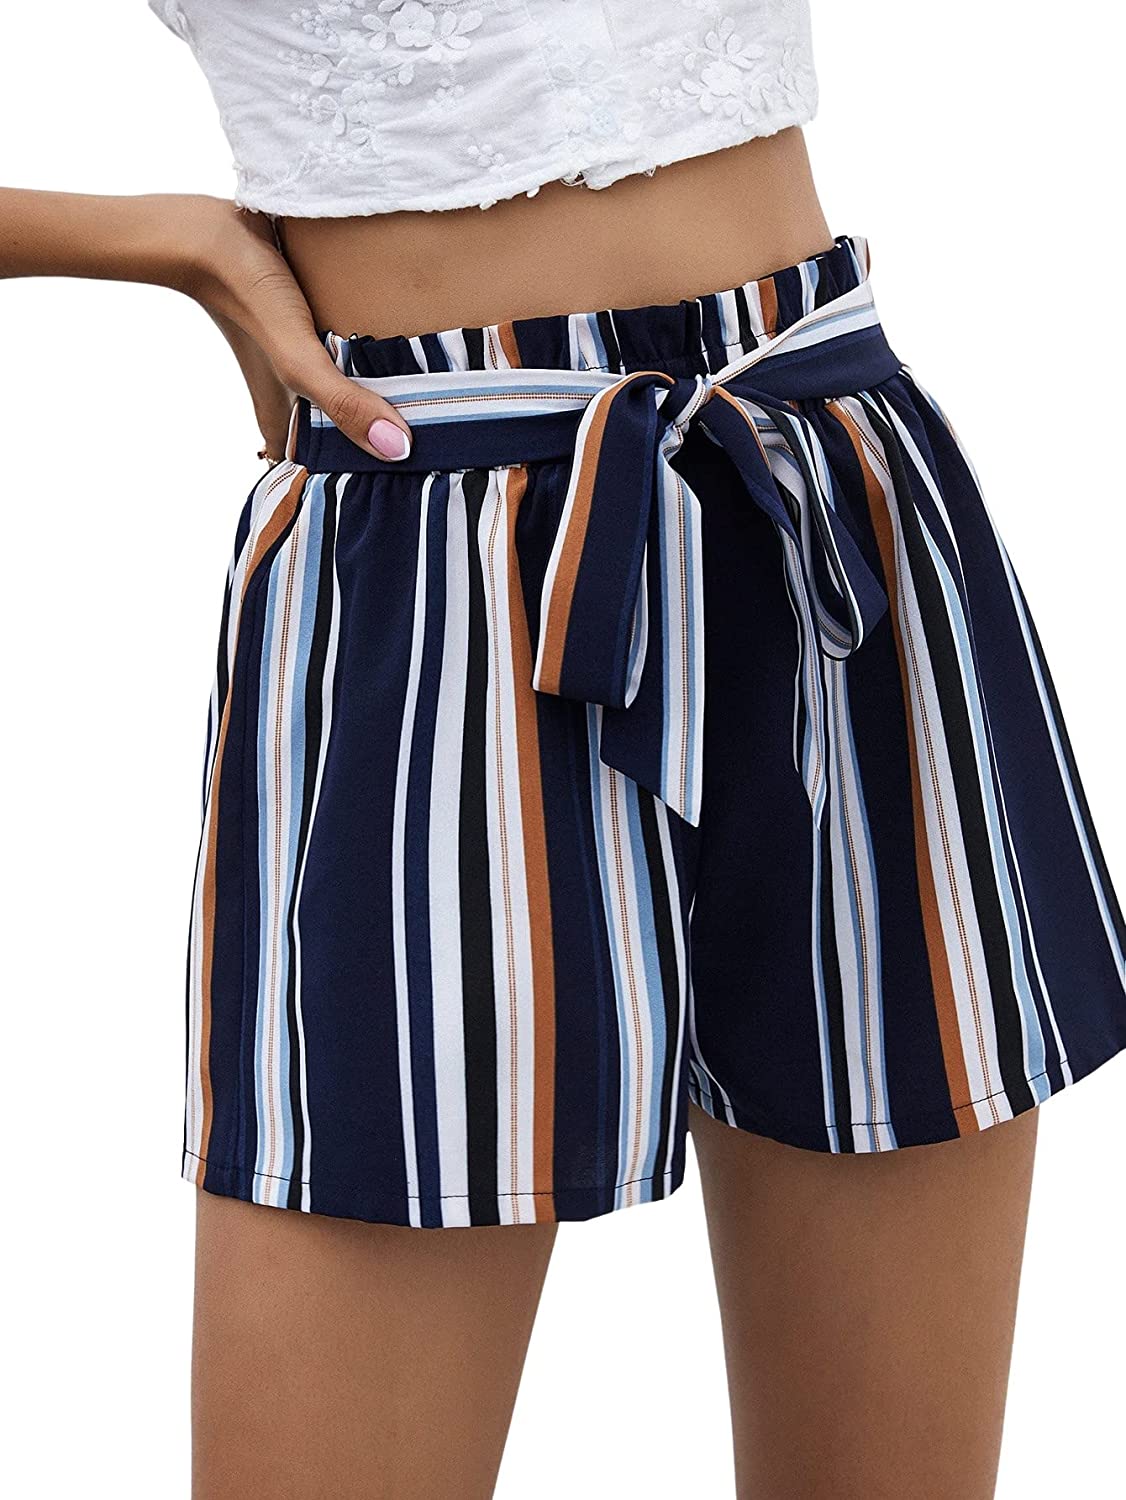 Milumia Womens High Waist Paper Bag Elastic Waist Casual Beach Shorts with Pockets